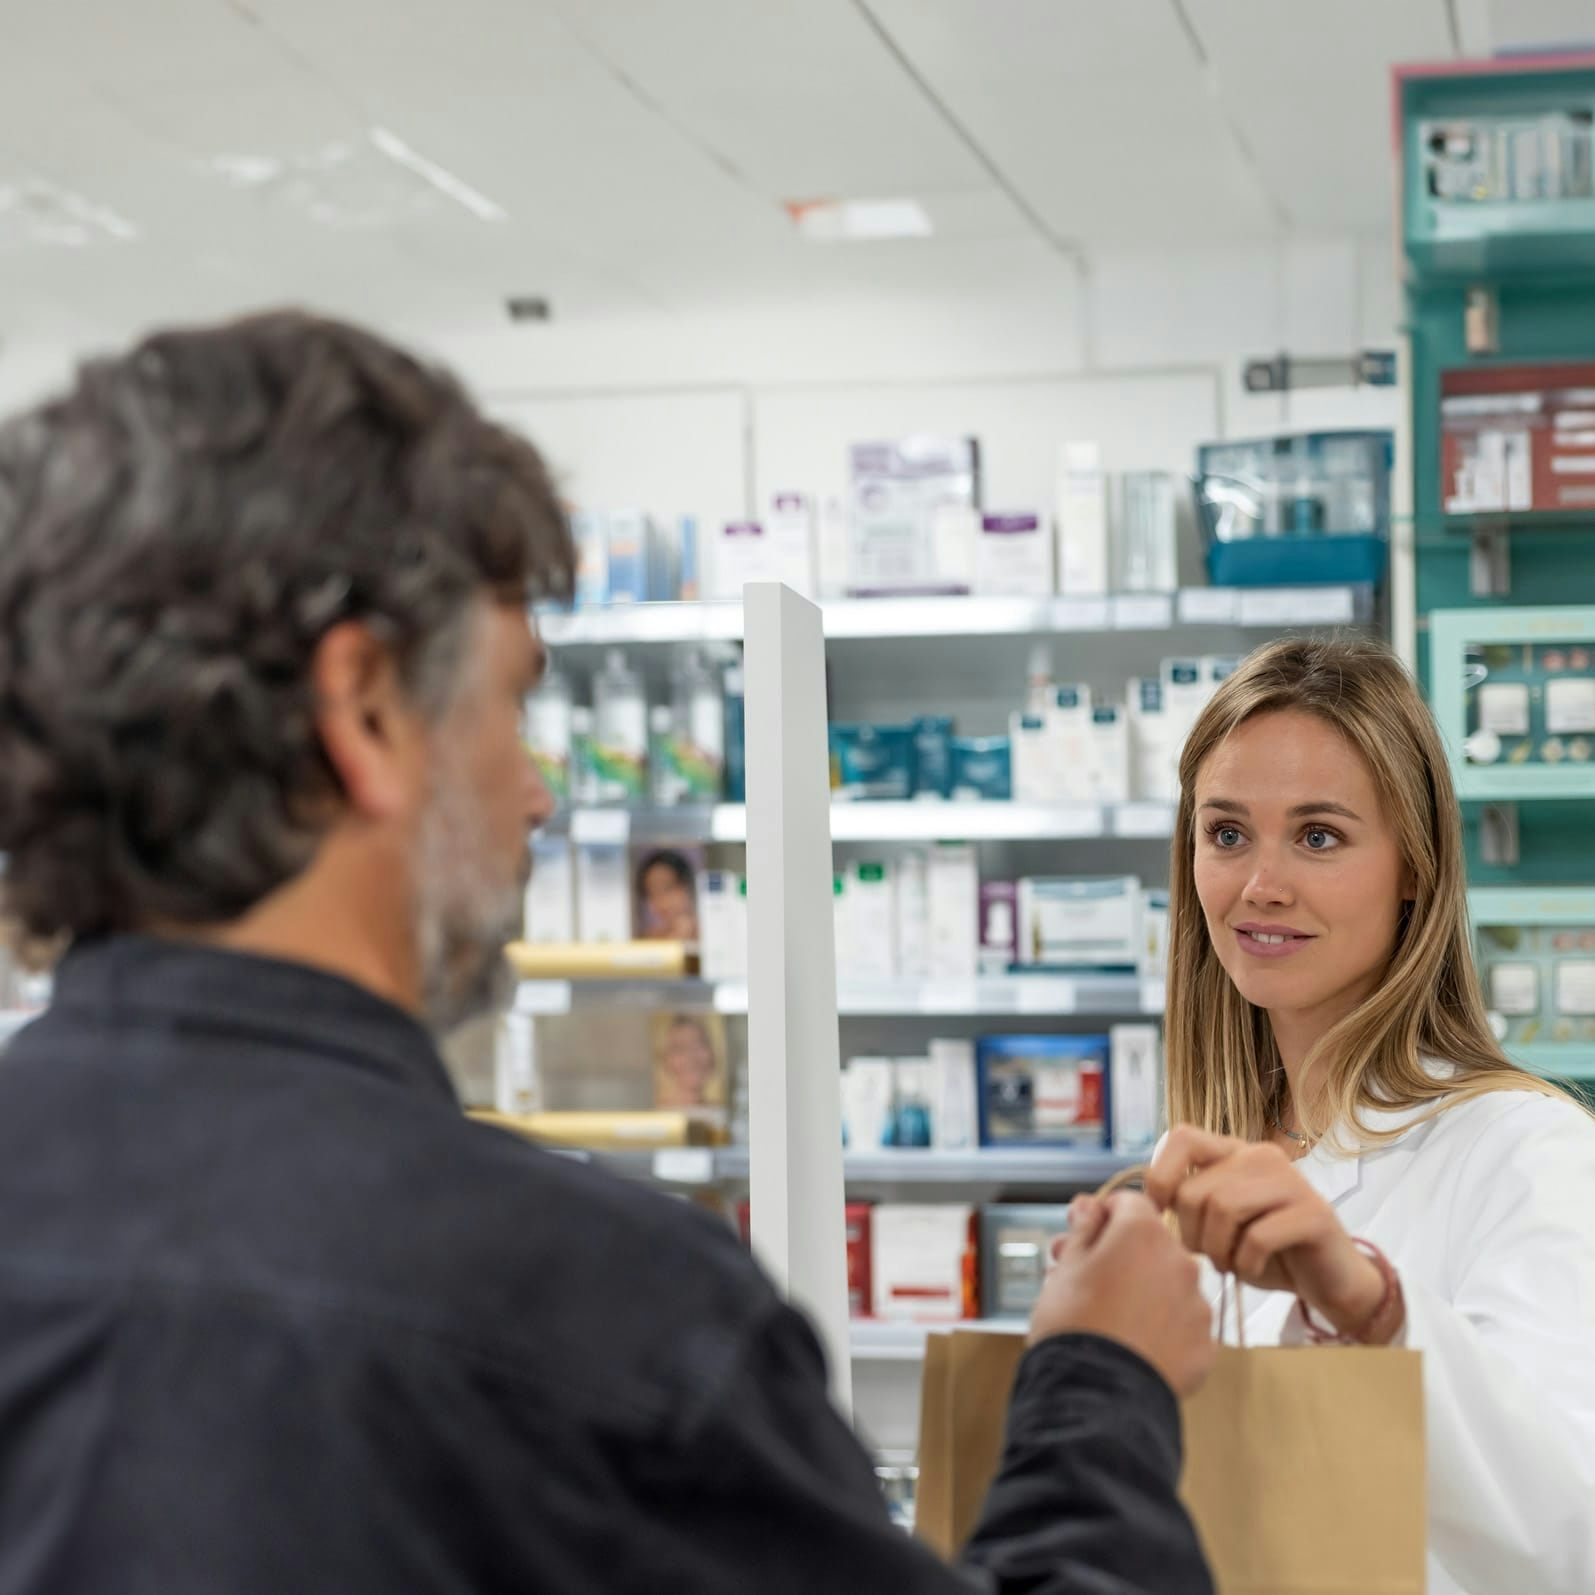 Un hombre canoso recoge una receta de un farmacéutico sonriente, quien le entrega una bolsa en el mostrador de la farmacia.